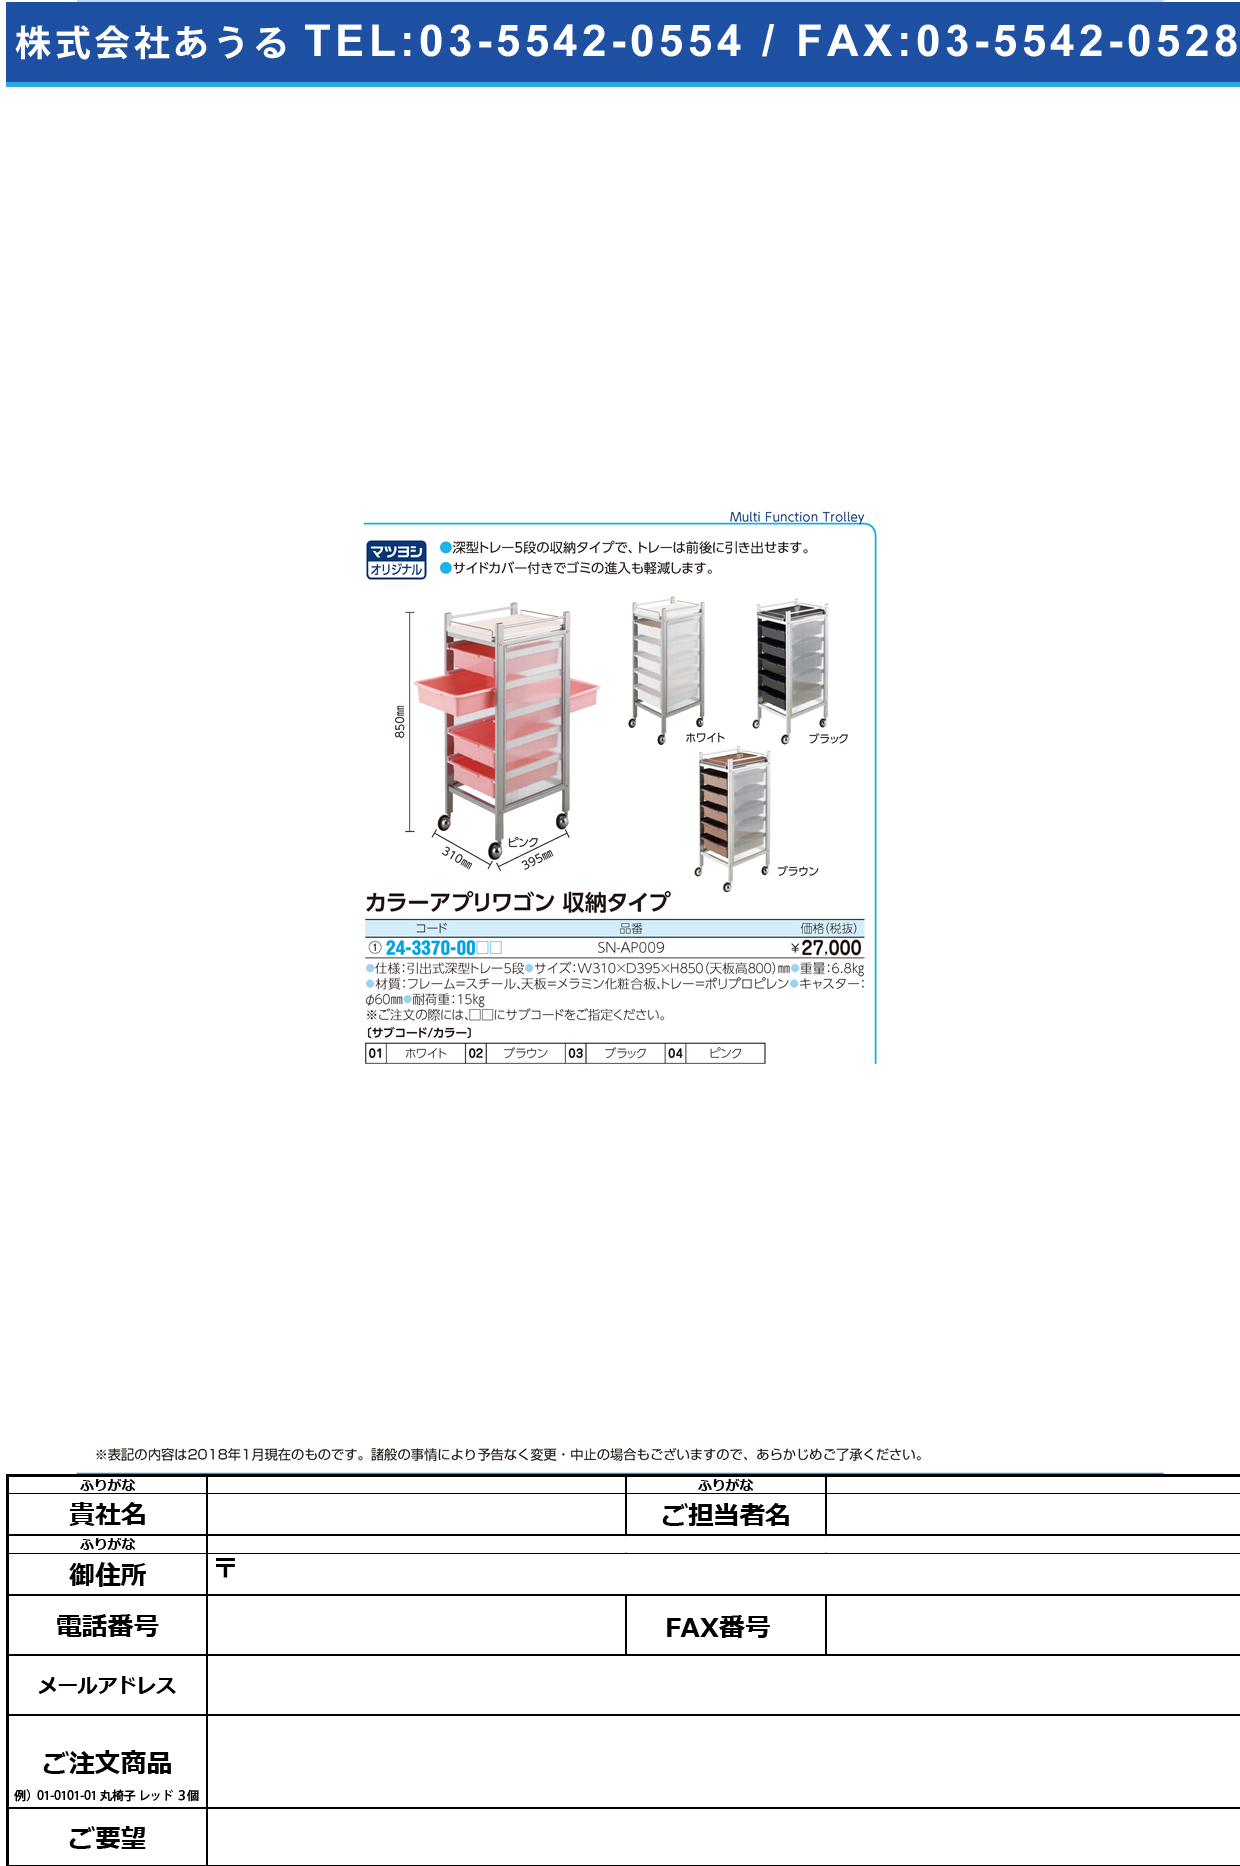 (24-3370-00)カラーアプリワゴン（収納タイプ） SN-AP009 ｶﾗｰｱﾌﾟﾘﾜｺﾞﾝｼｭｳﾉｳﾀｲﾌﾟ ブラック【1台単位】【2019年カタログ商品】